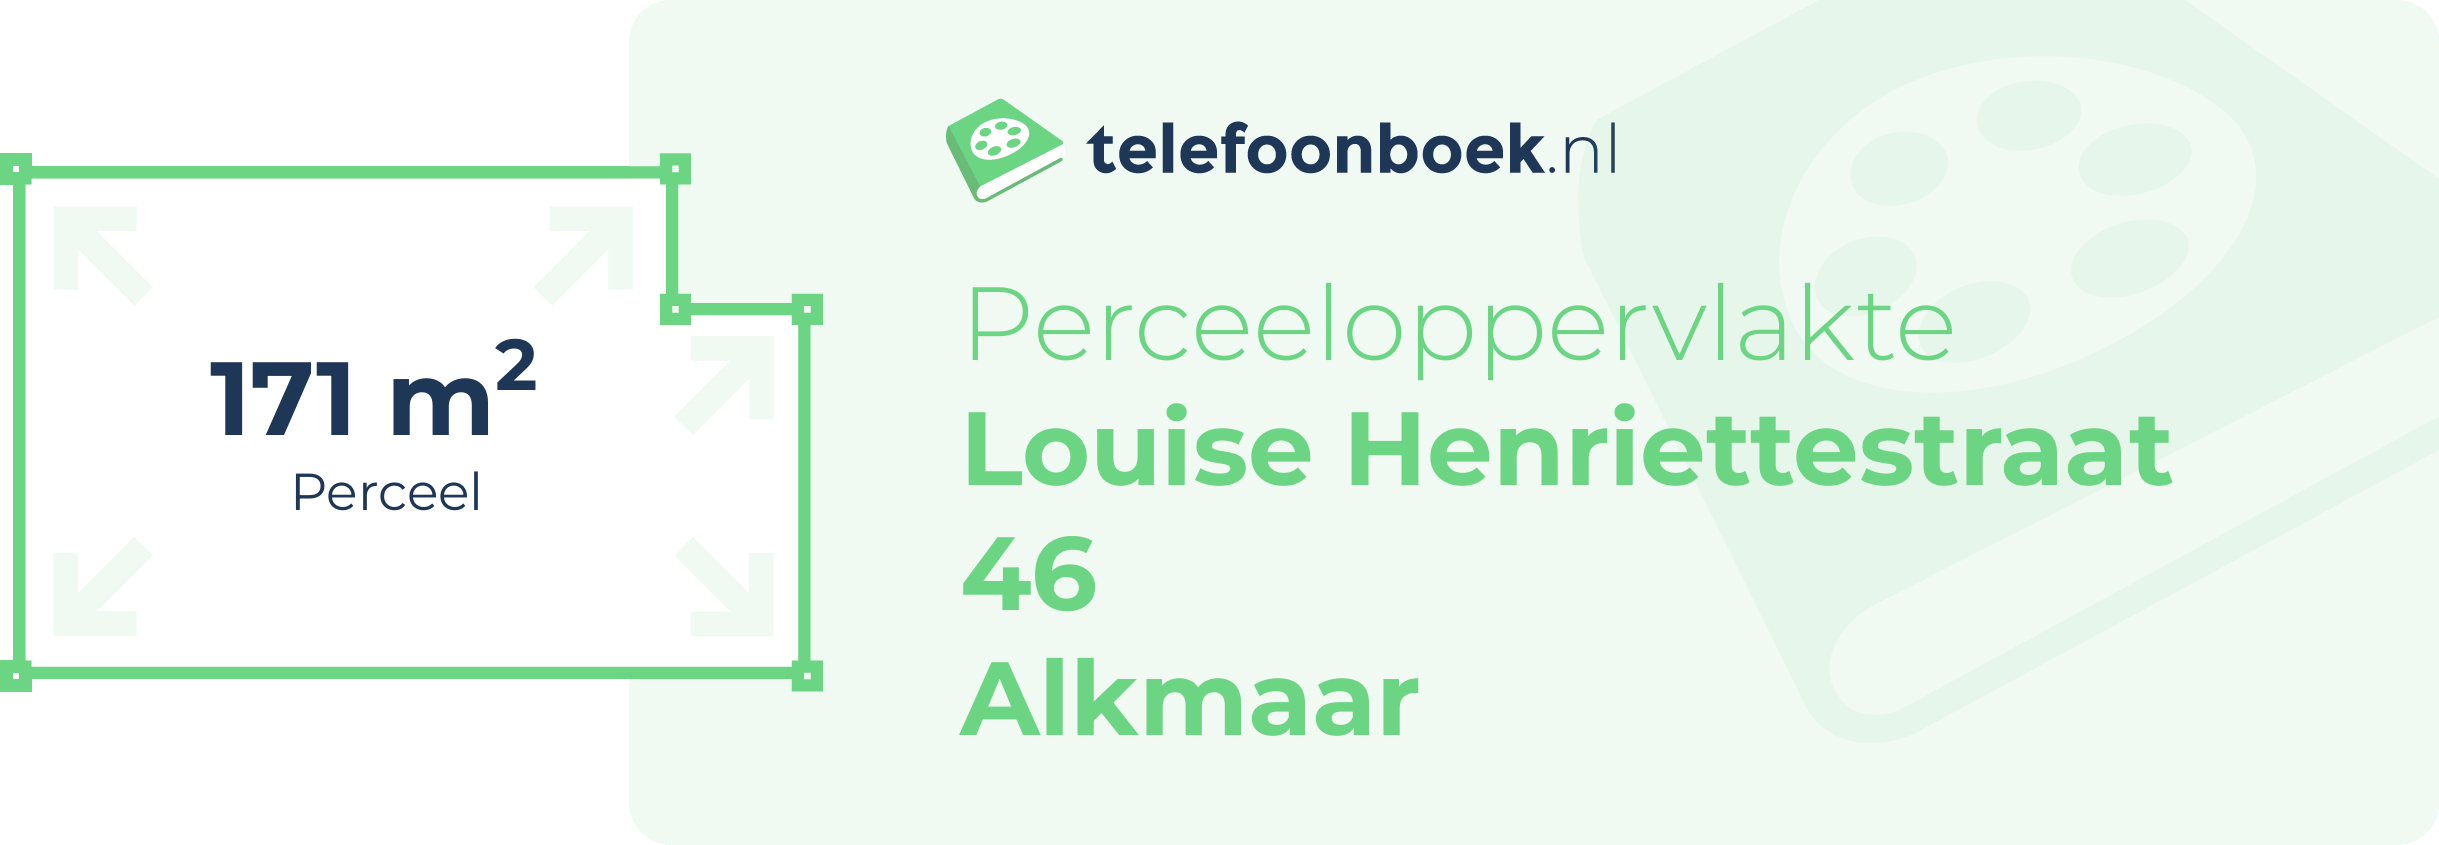 Perceeloppervlakte Louise Henriettestraat 46 Alkmaar